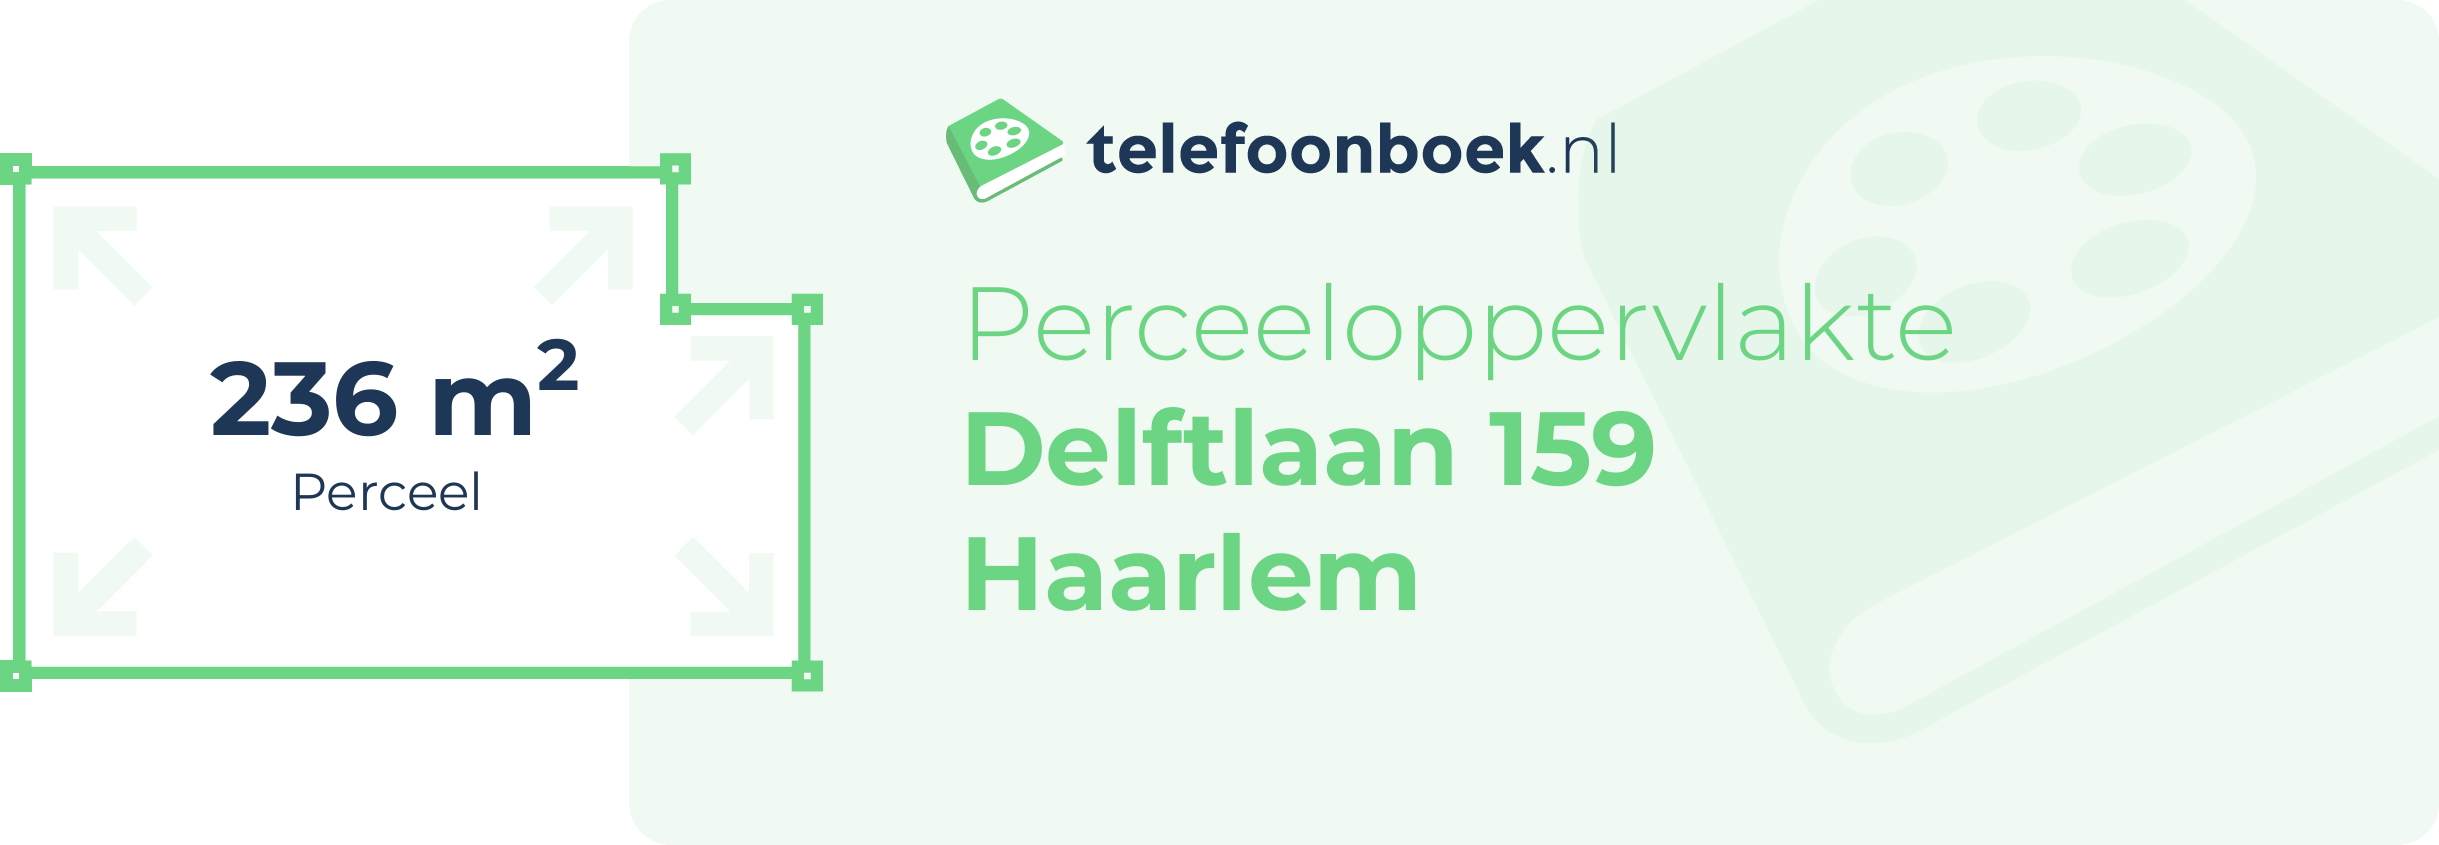 Perceeloppervlakte Delftlaan 159 Haarlem